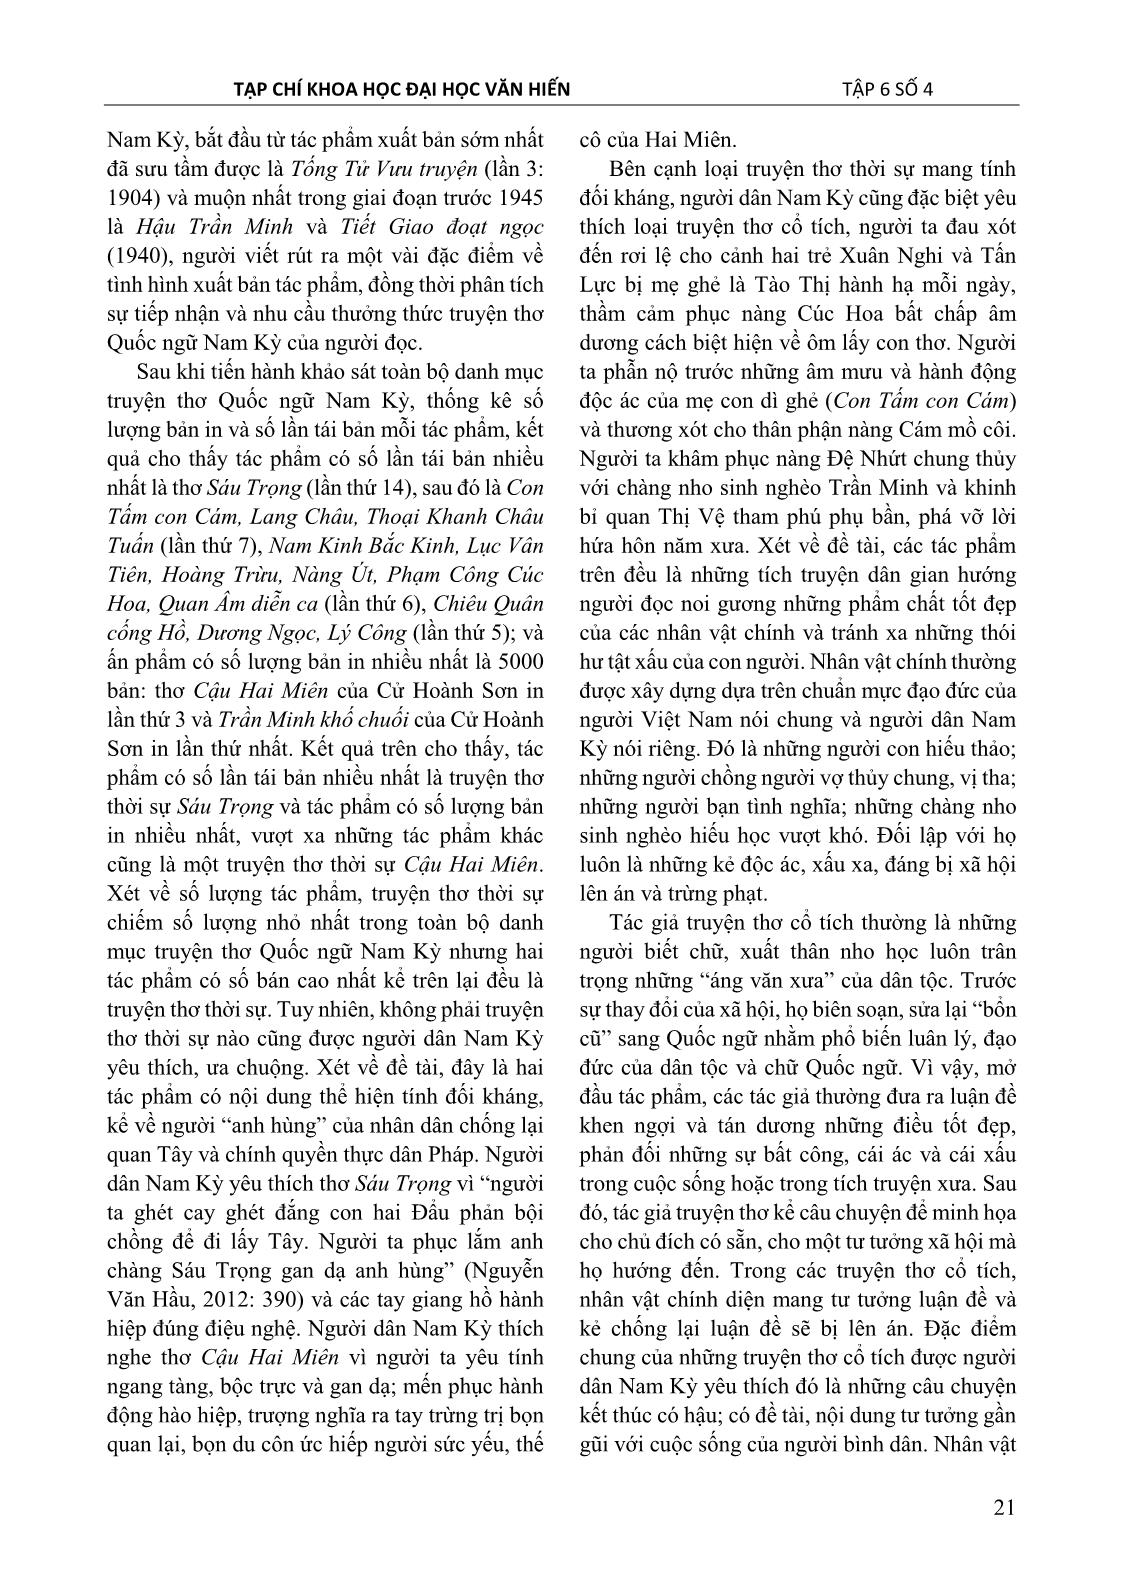 Truyện thơ Quốc ngữ Nam kỳ – Một loại hình văn chương bị lãng quên trang 5